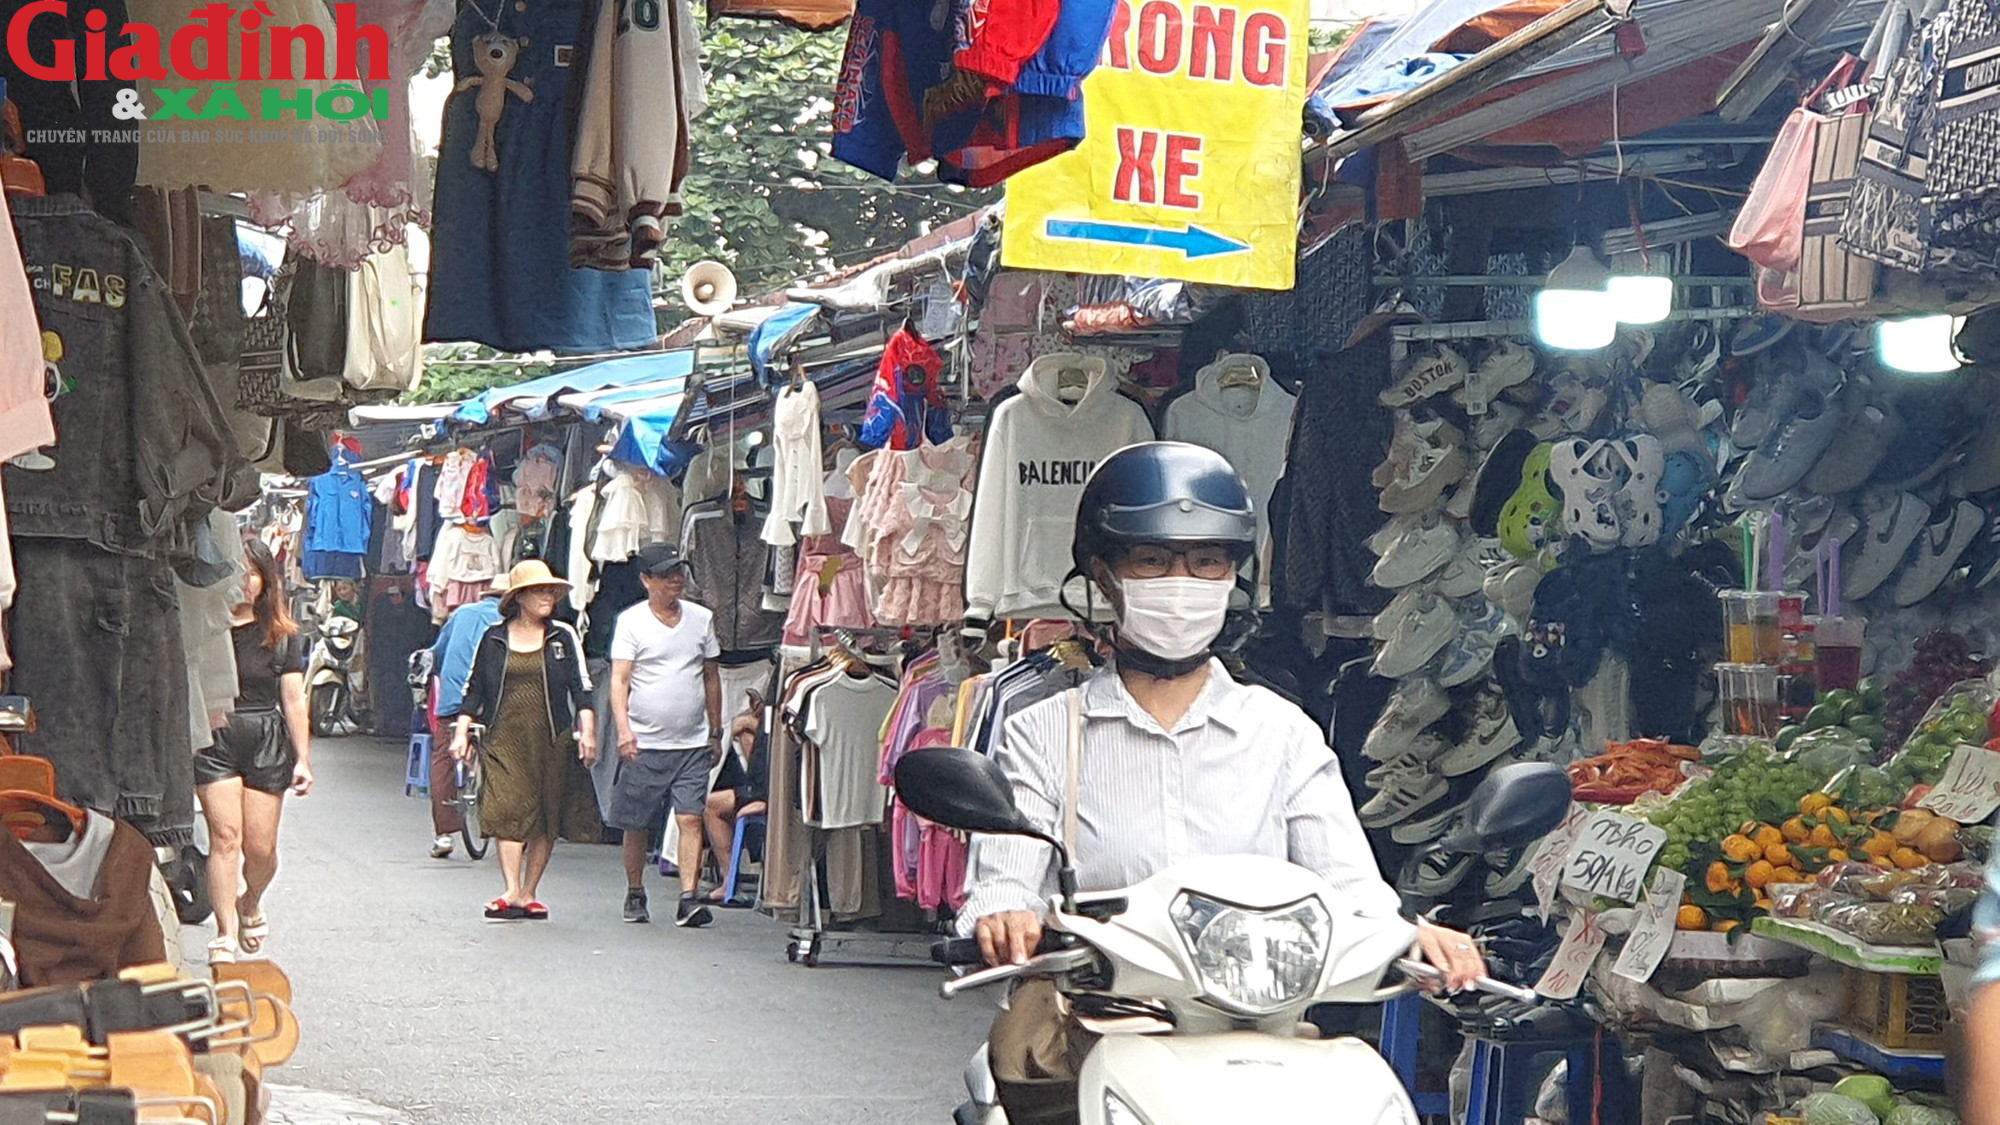 Hà Nội: Đường Phan Văn Trường đang bị chiếm dụng bởi ‘thiên đường mua sắm’ giới trẻ  - Ảnh 8.